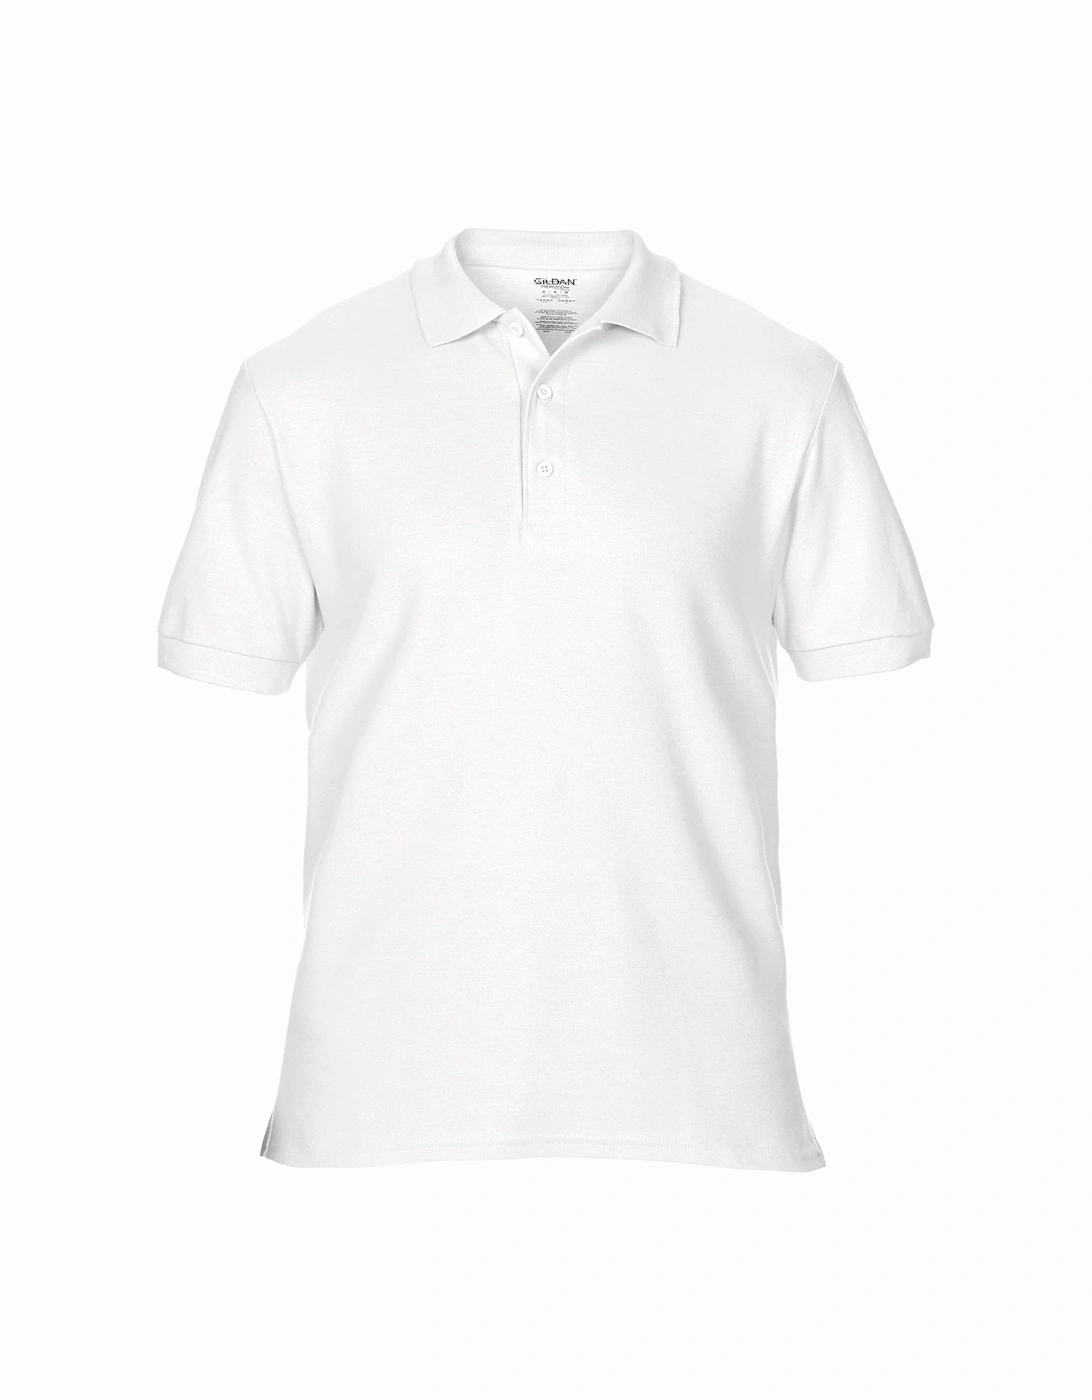 Mens Premium Cotton Sport Double Pique Polo Shirt, 5 of 4